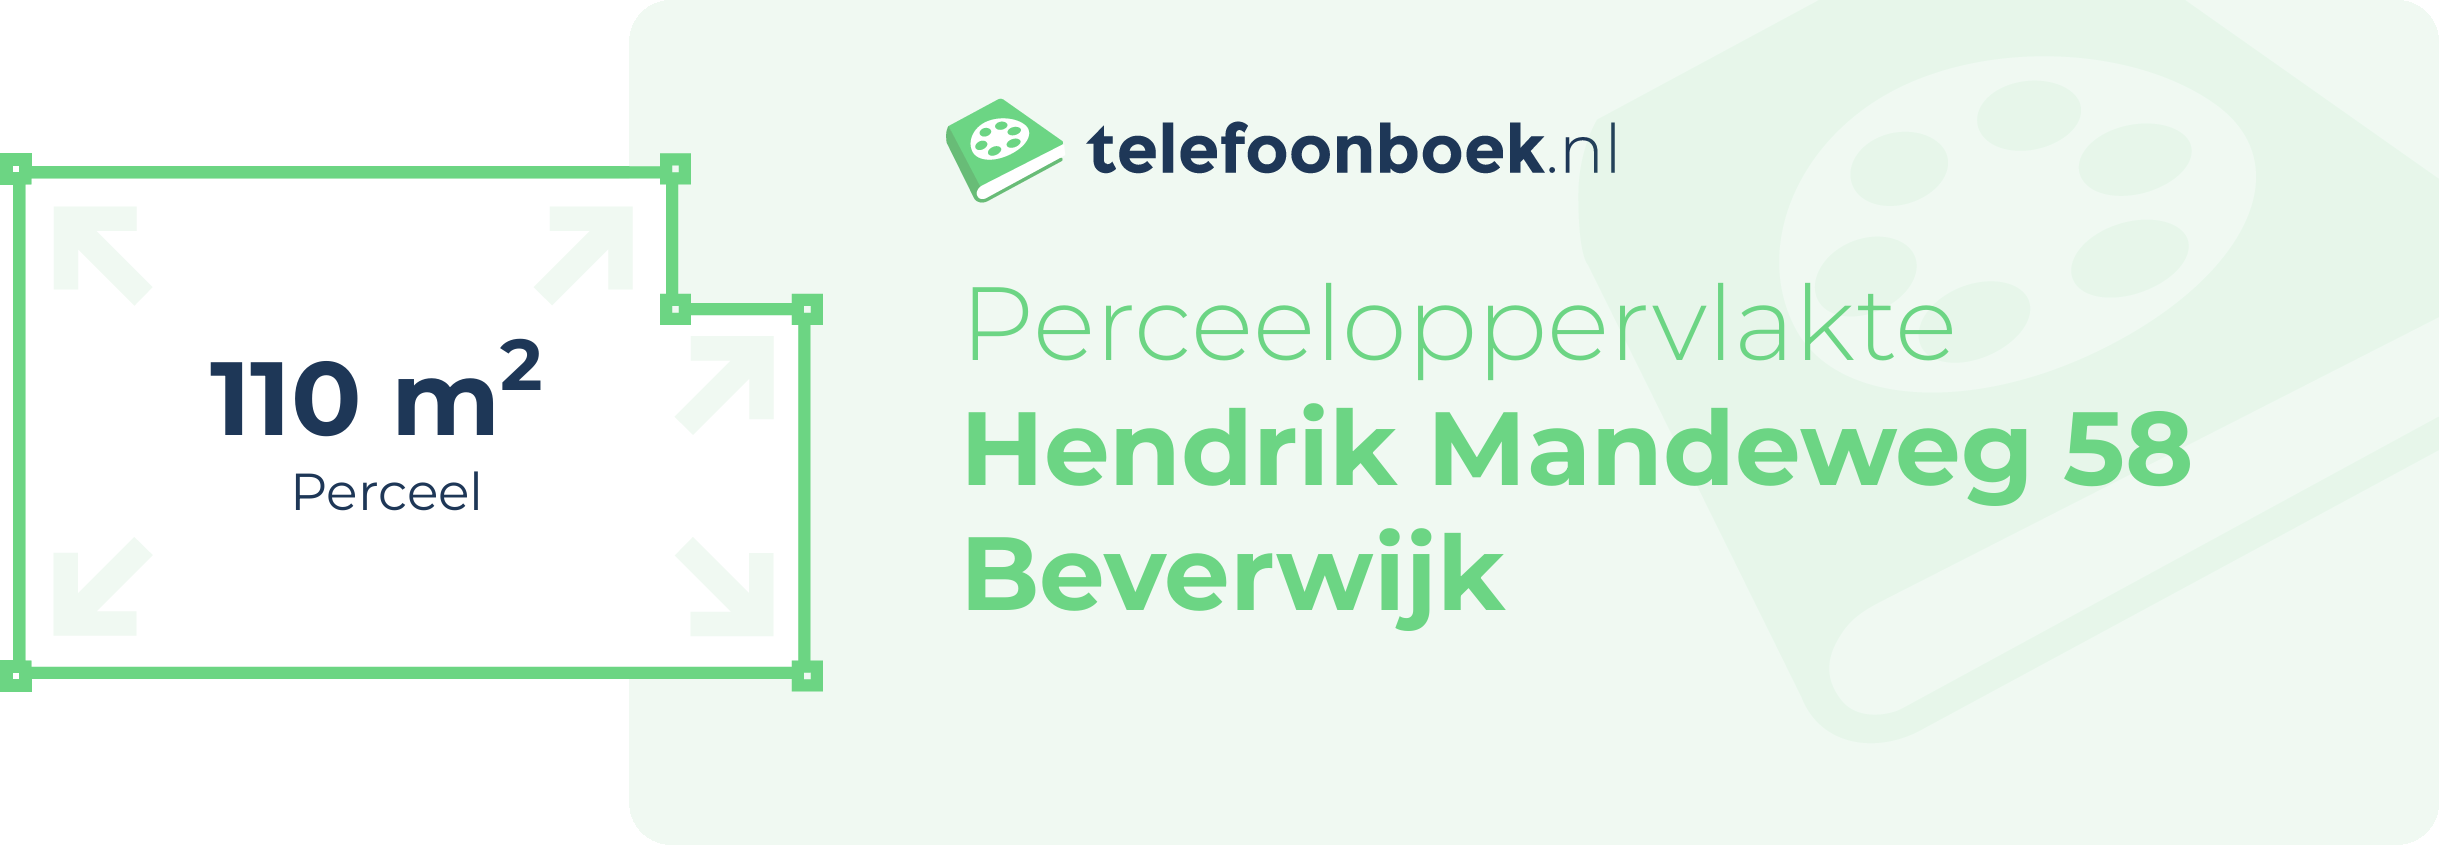 Perceeloppervlakte Hendrik Mandeweg 58 Beverwijk